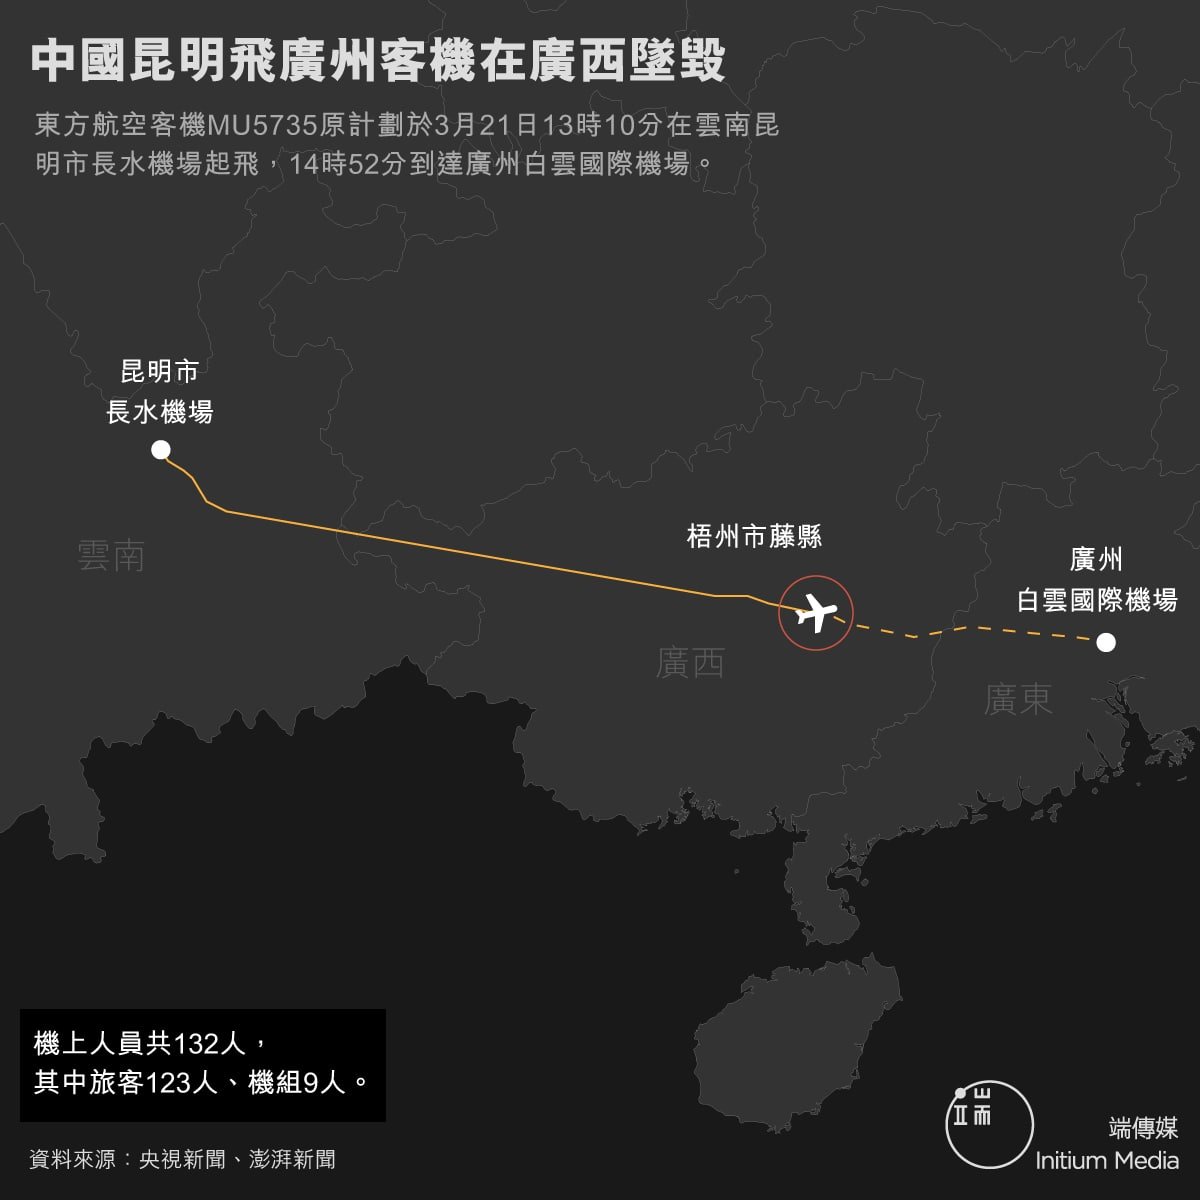 【中國東航墜毀客機飛行 公布，原定由昆明飛往廣州】 據了解，中國東航波音737客機MU5735於21日北京時間13:15分從雲南省昆明長水機場起飛，原定於當日15:05抵達廣東省廣州白雲機場。